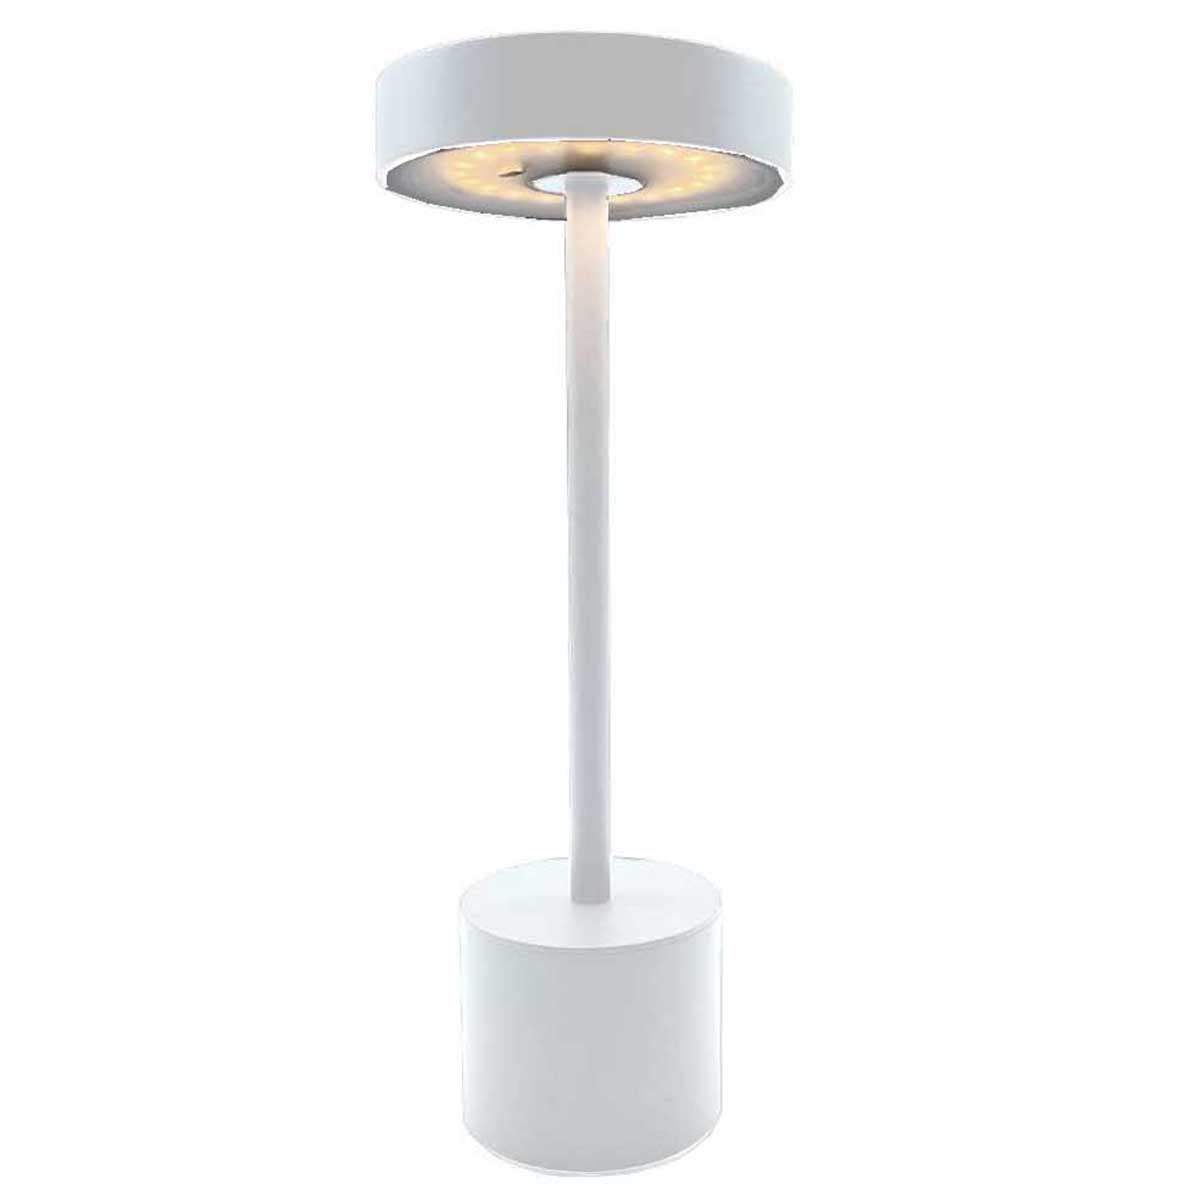 Lampe design sans fil et tactile à Leds Luxciole Blanche - Le Site Du Cuir